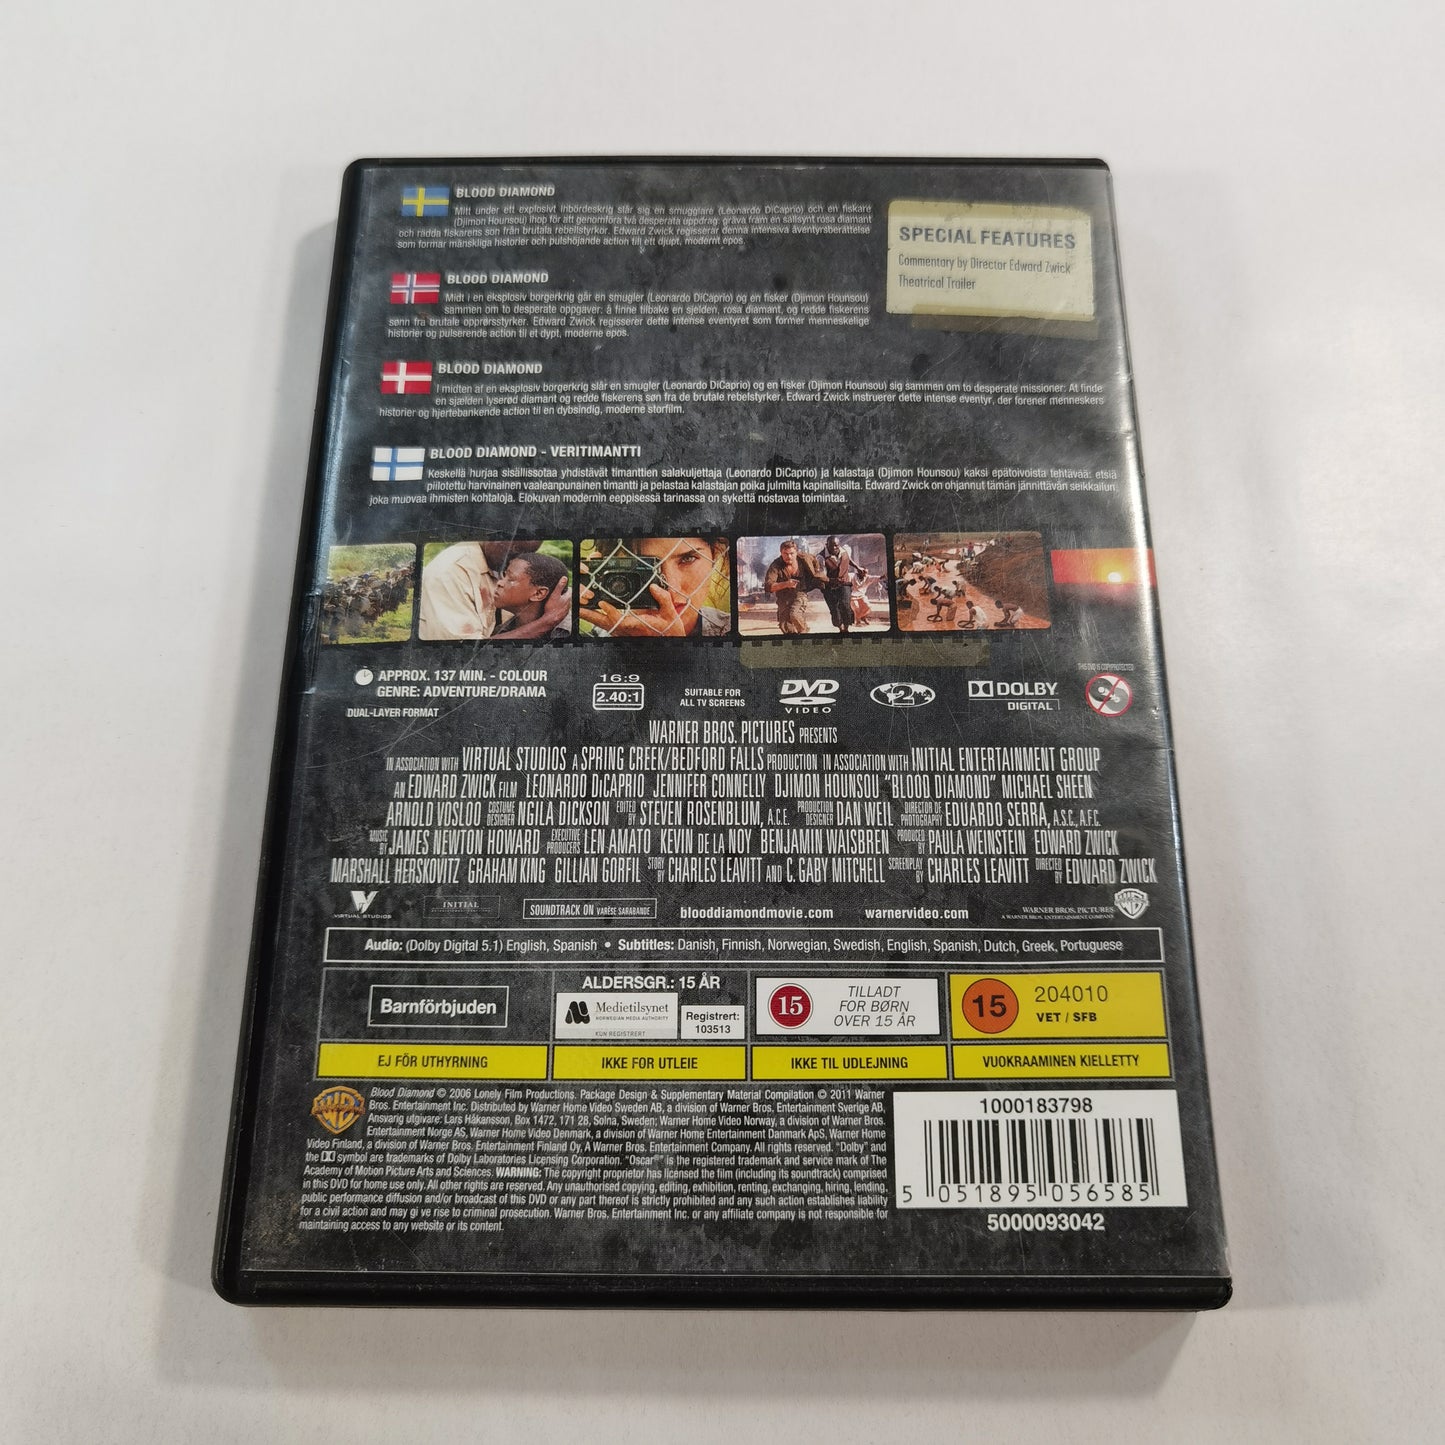 Blood Diamond (2006) - DVD SE NO DK FI 2011